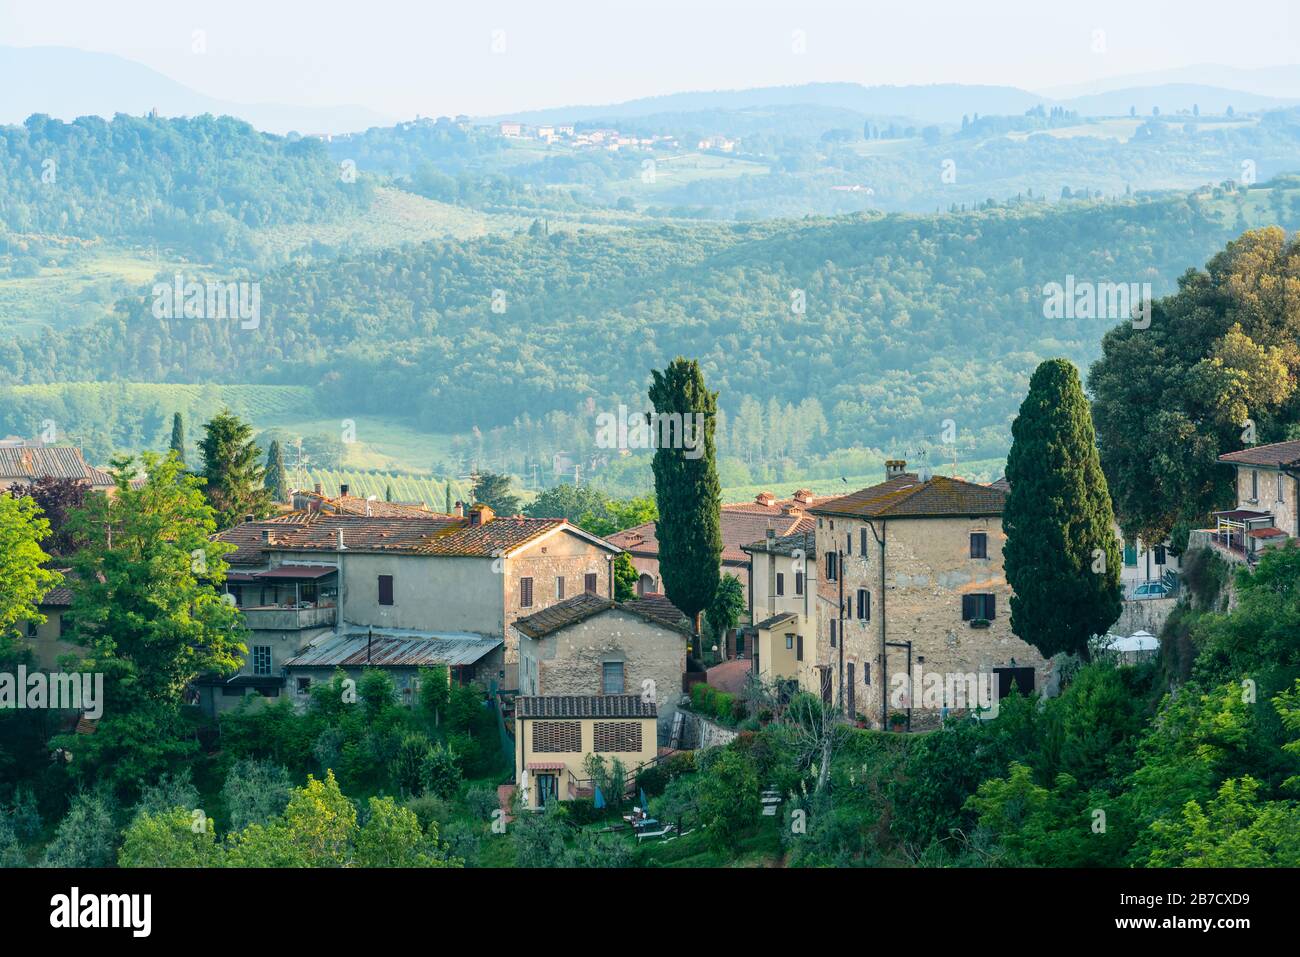 Edifici residenziali con una campagna toscana sullo sfondo a San Gimignano, provincia di Siena, Italia. Foto Stock